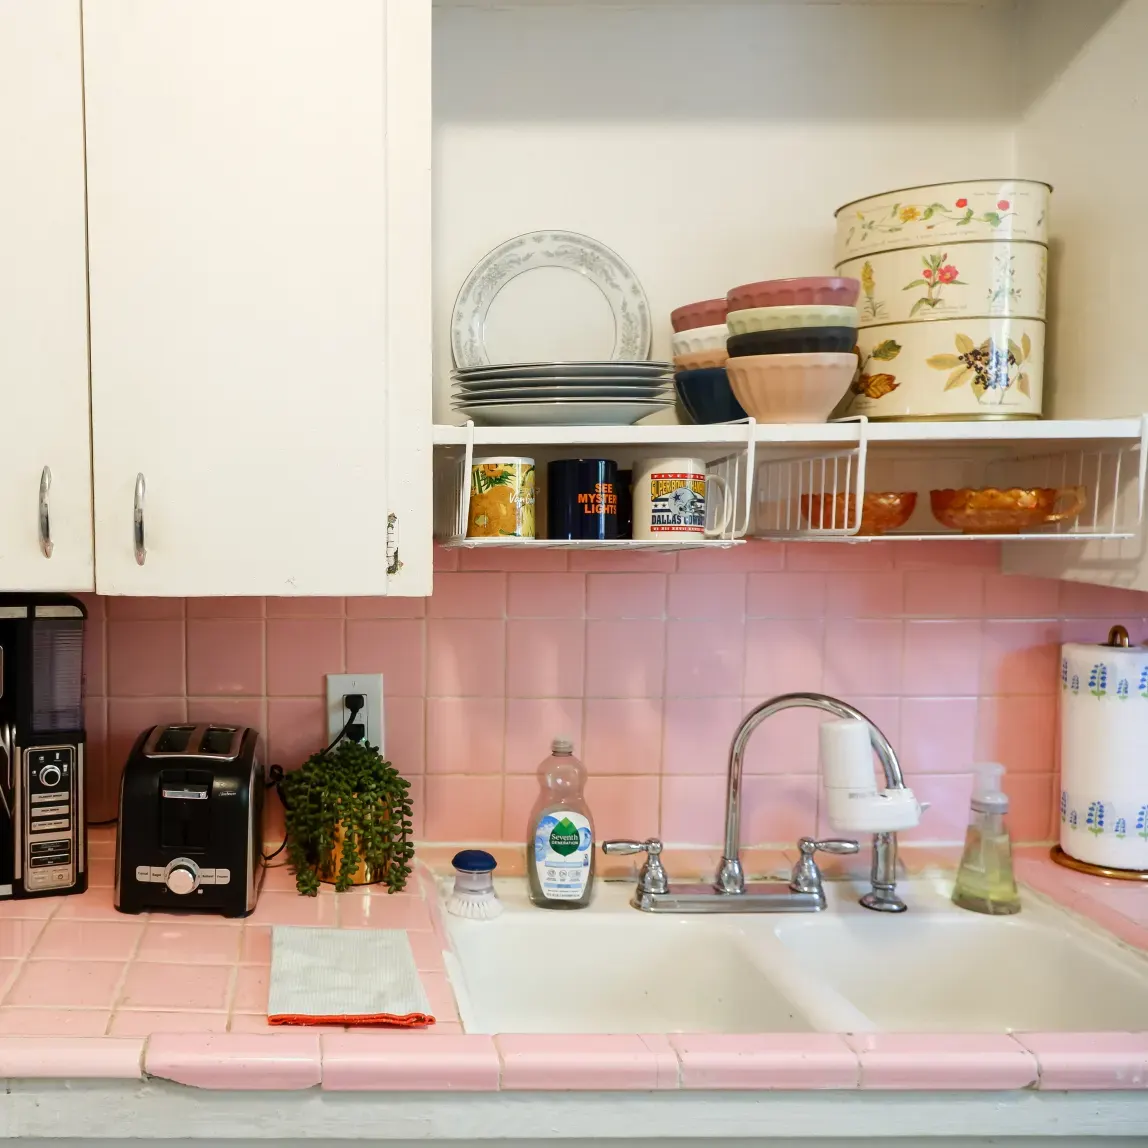 Designing A Pink Kitchen - 20 Pretty Pink Kitchen Ideas